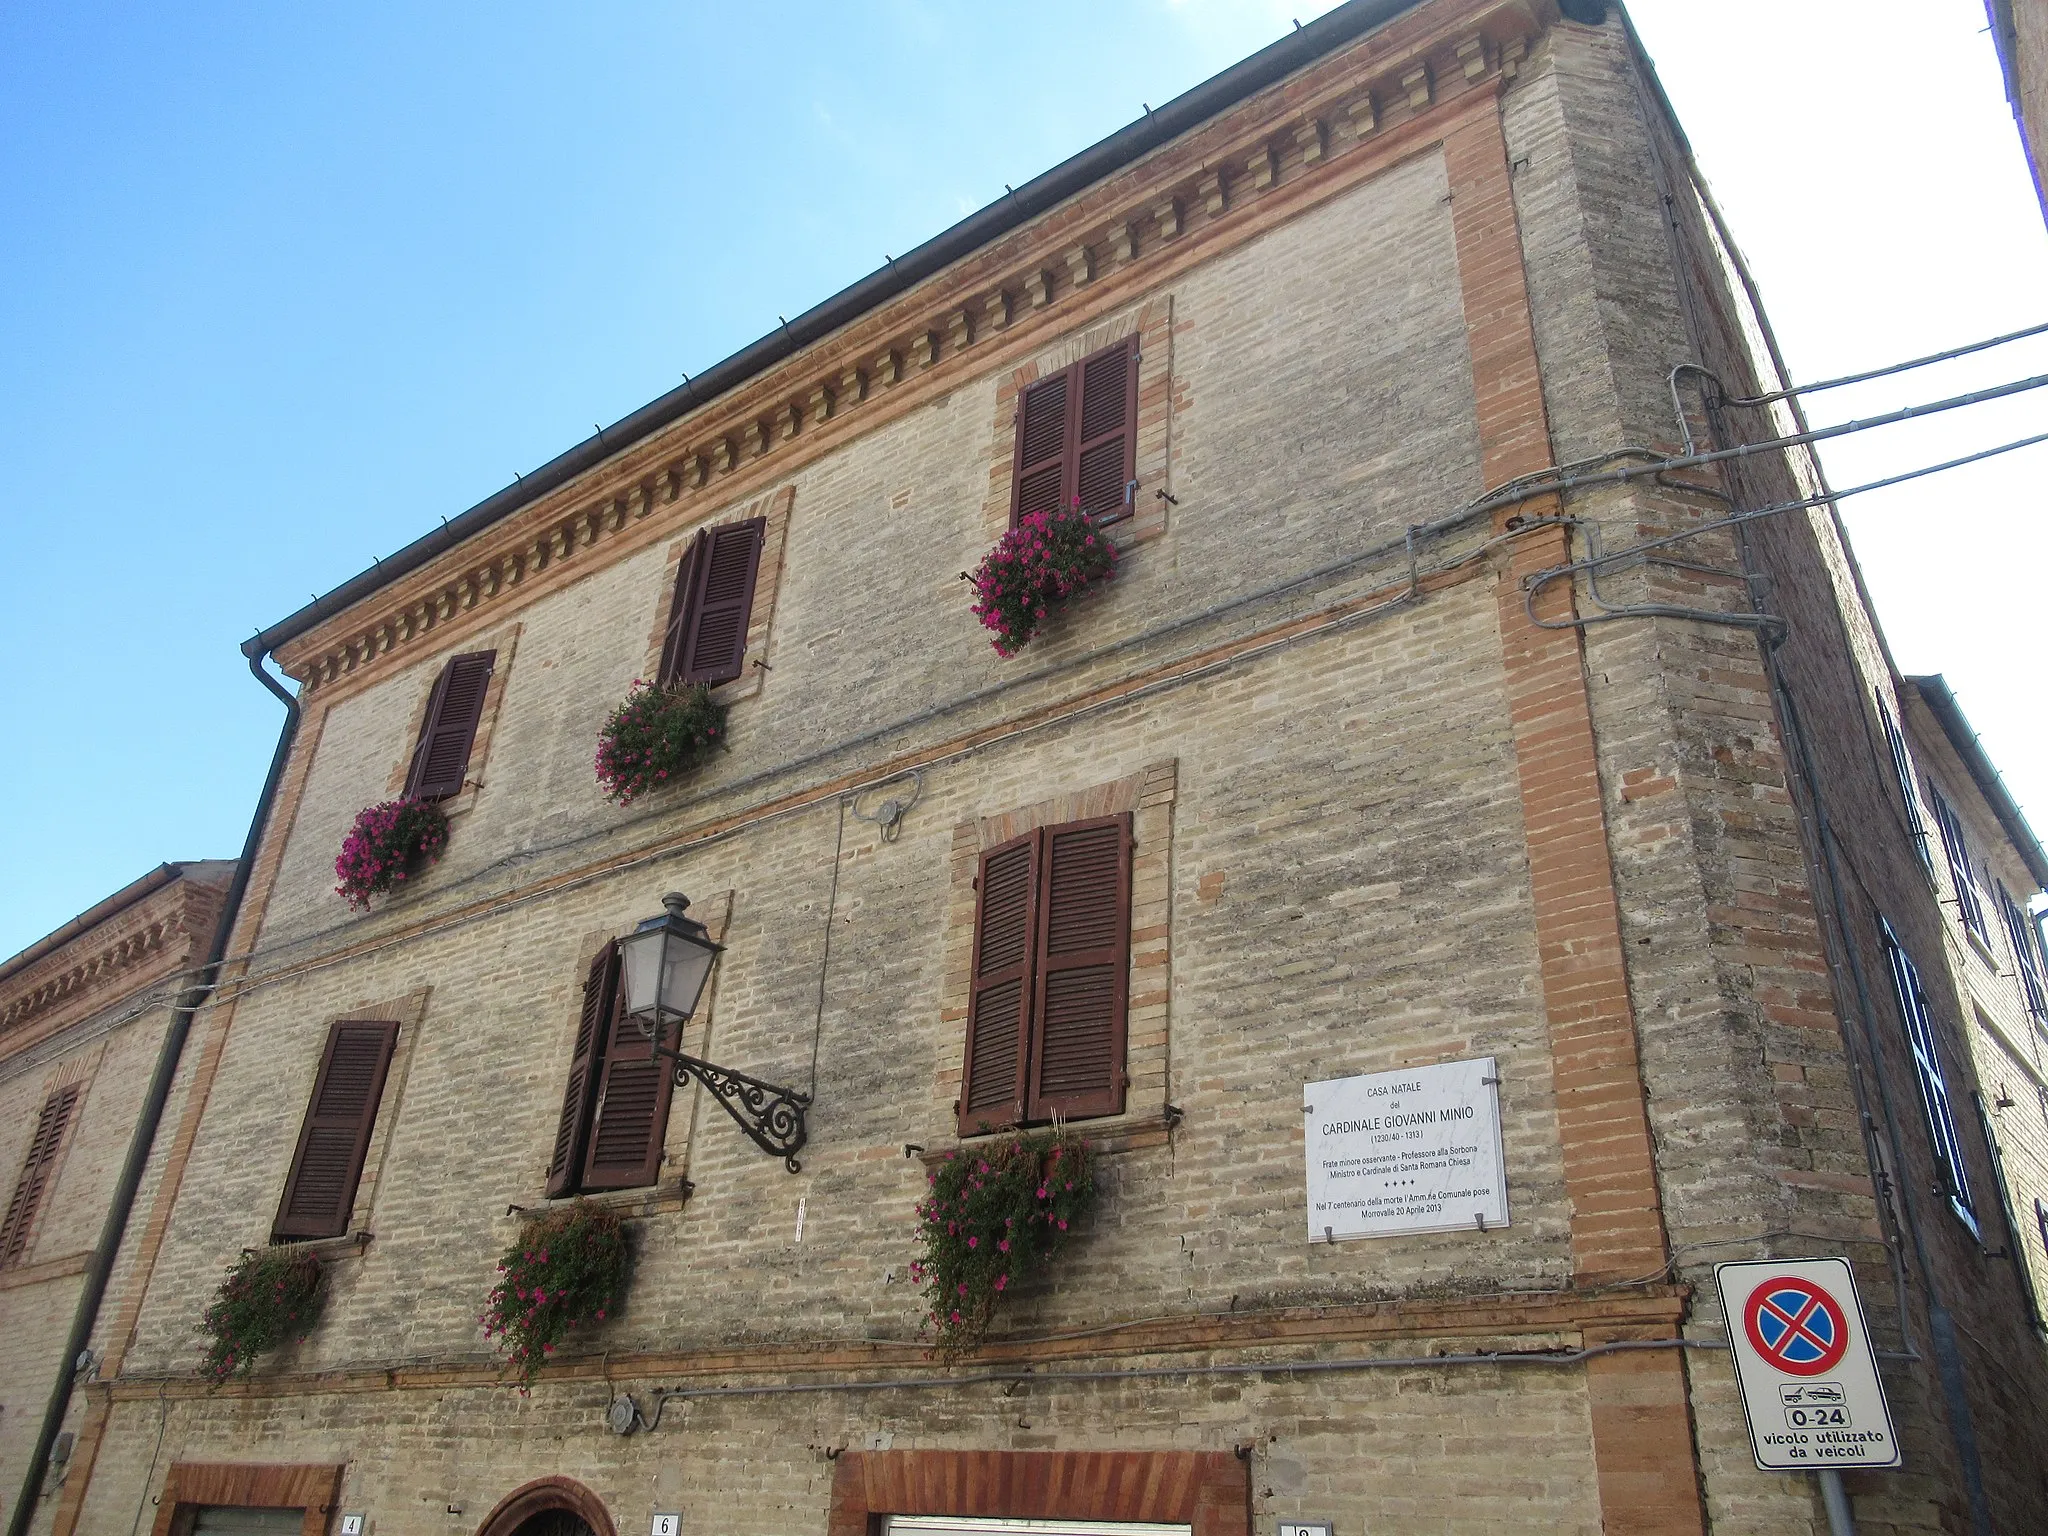 Photo showing: Morrovalle-Casa natale del cardinale Giovanni Minio